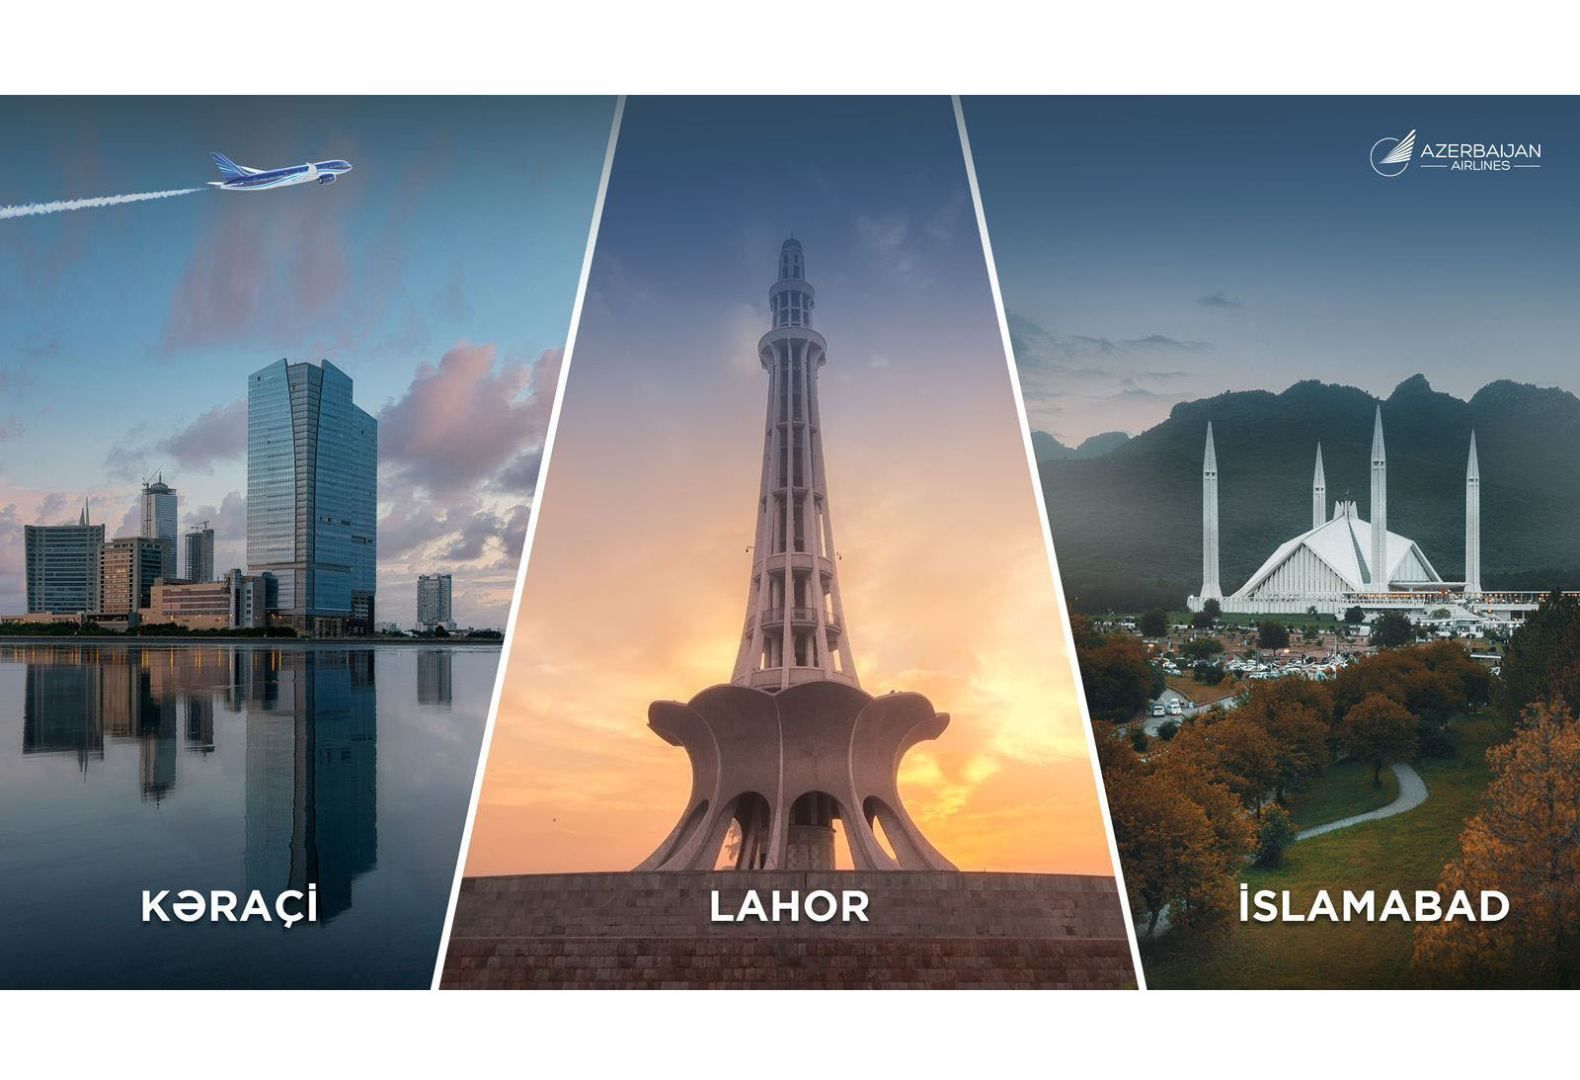 AZAL to launch flights to 3 popular cities of Pakistan